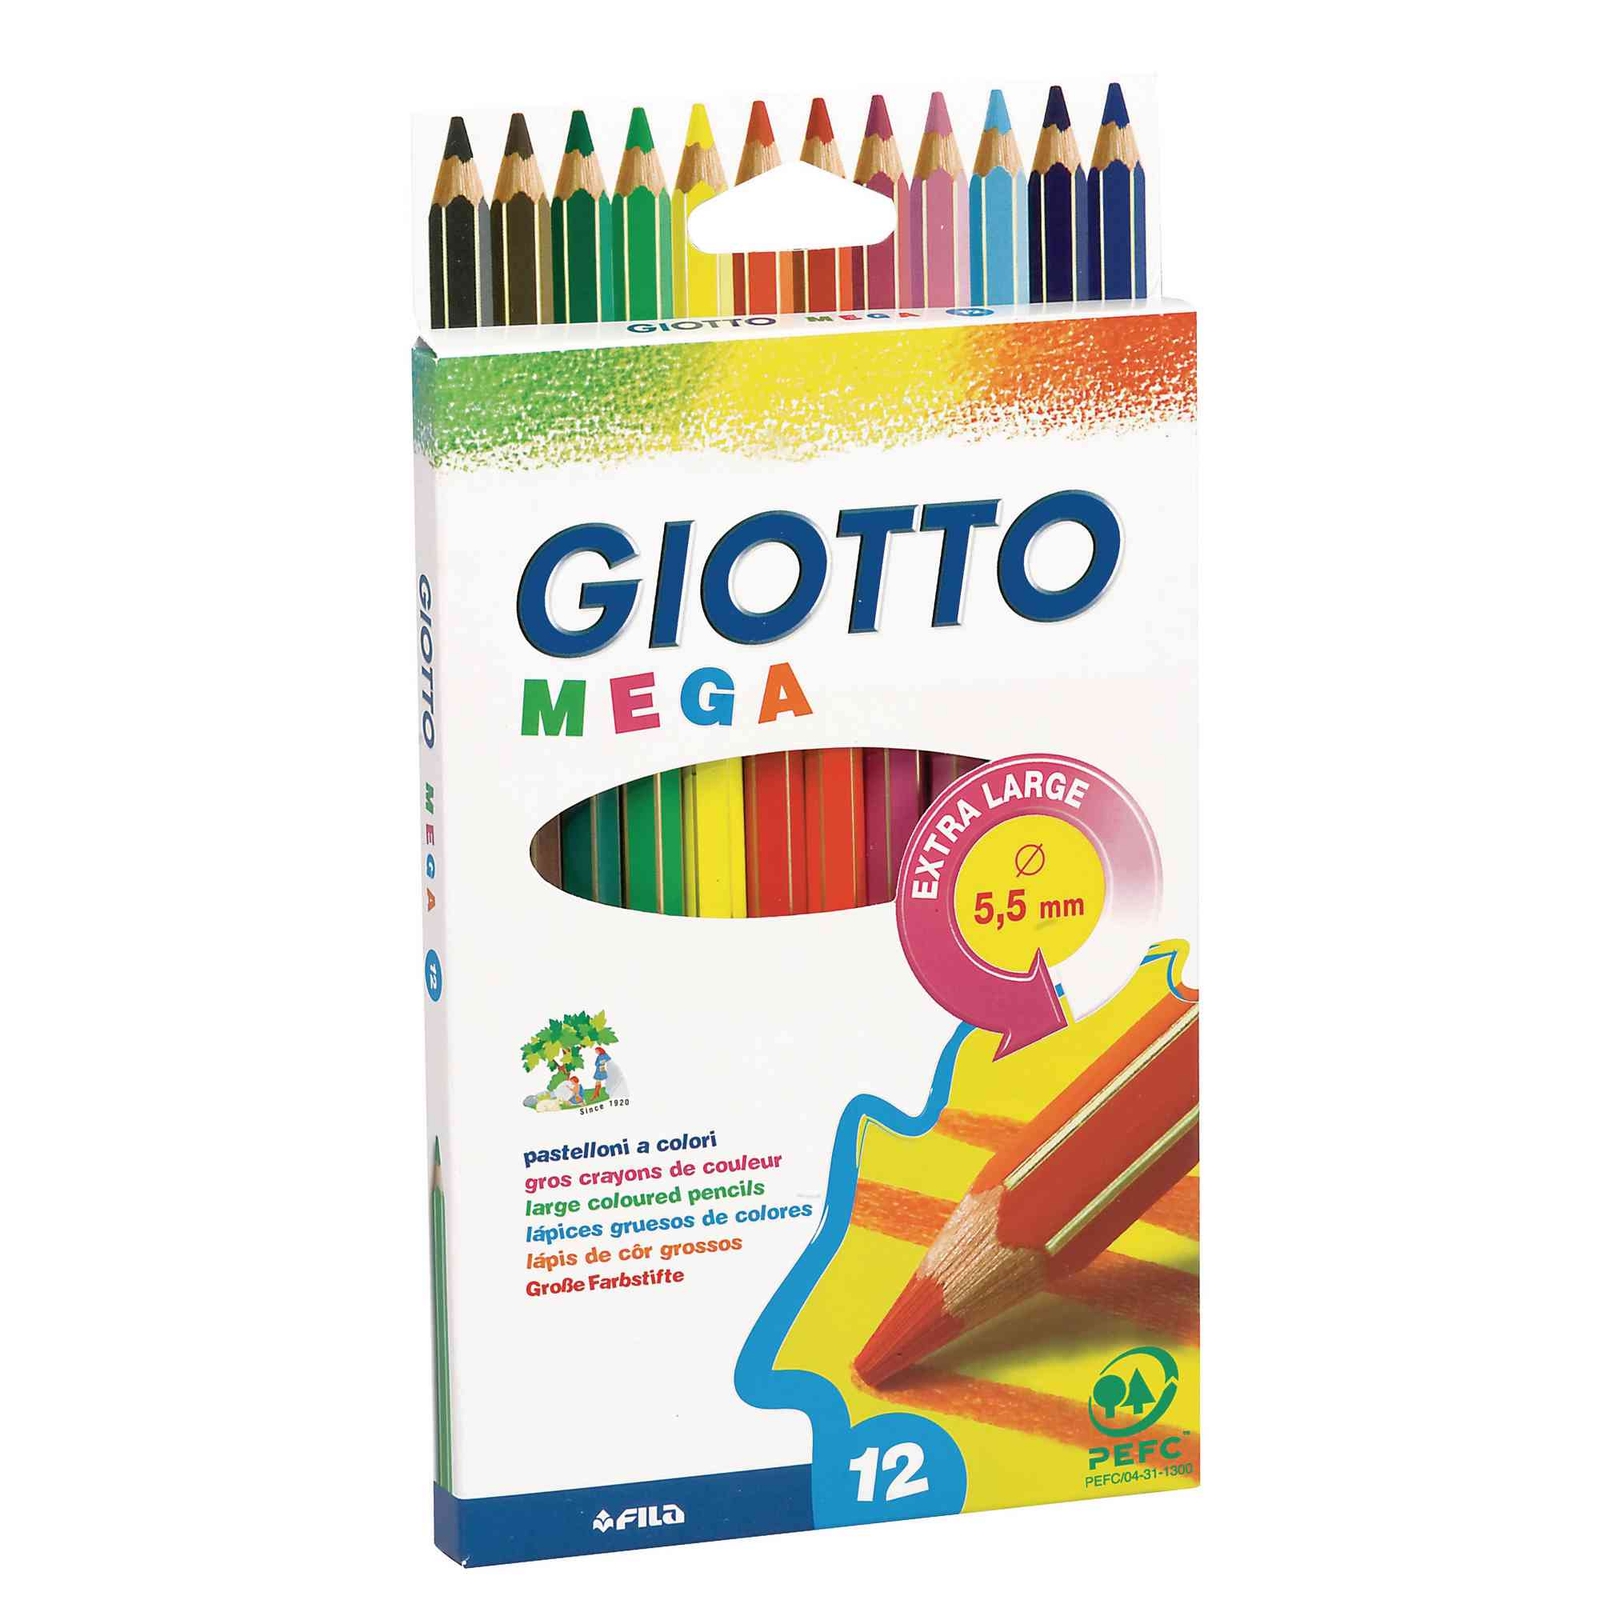 Giotto Mega Colouring Pencils - Hexagonal